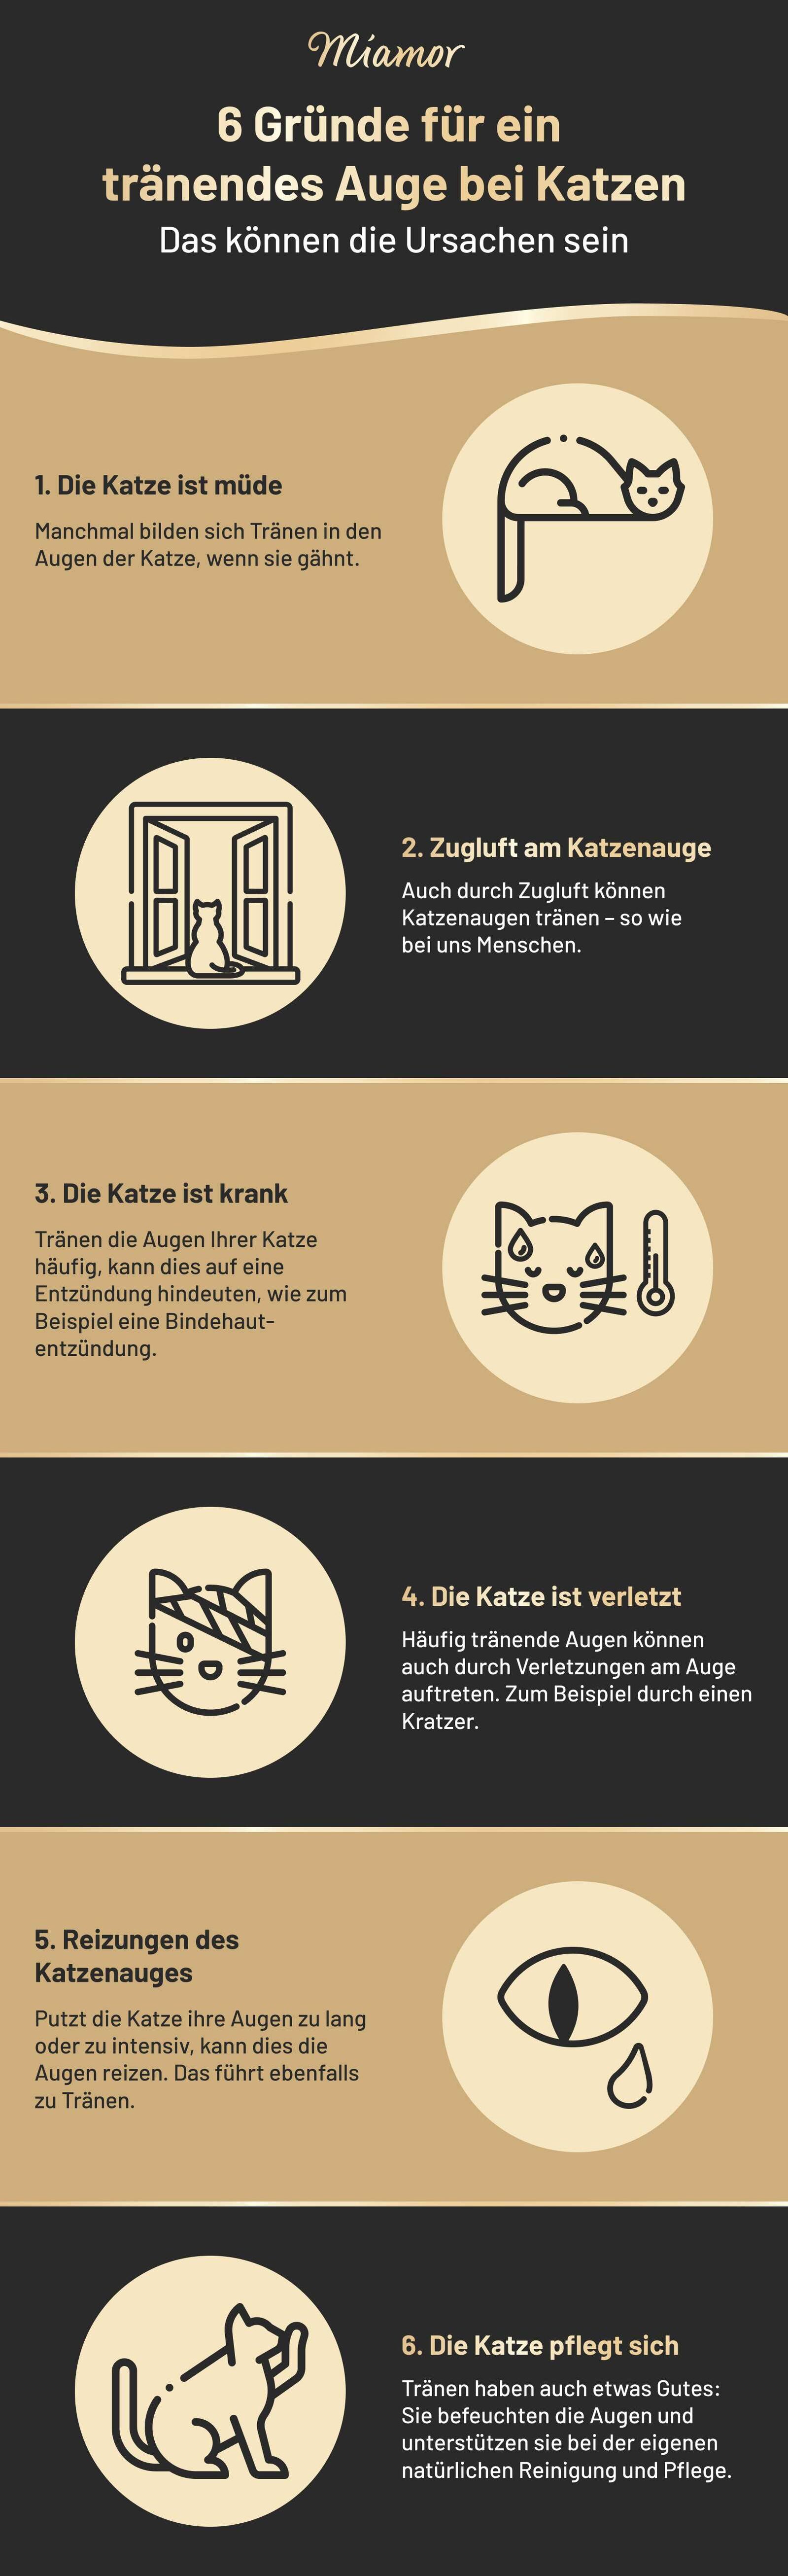 Infografik über tränende Augen bei Katzen.